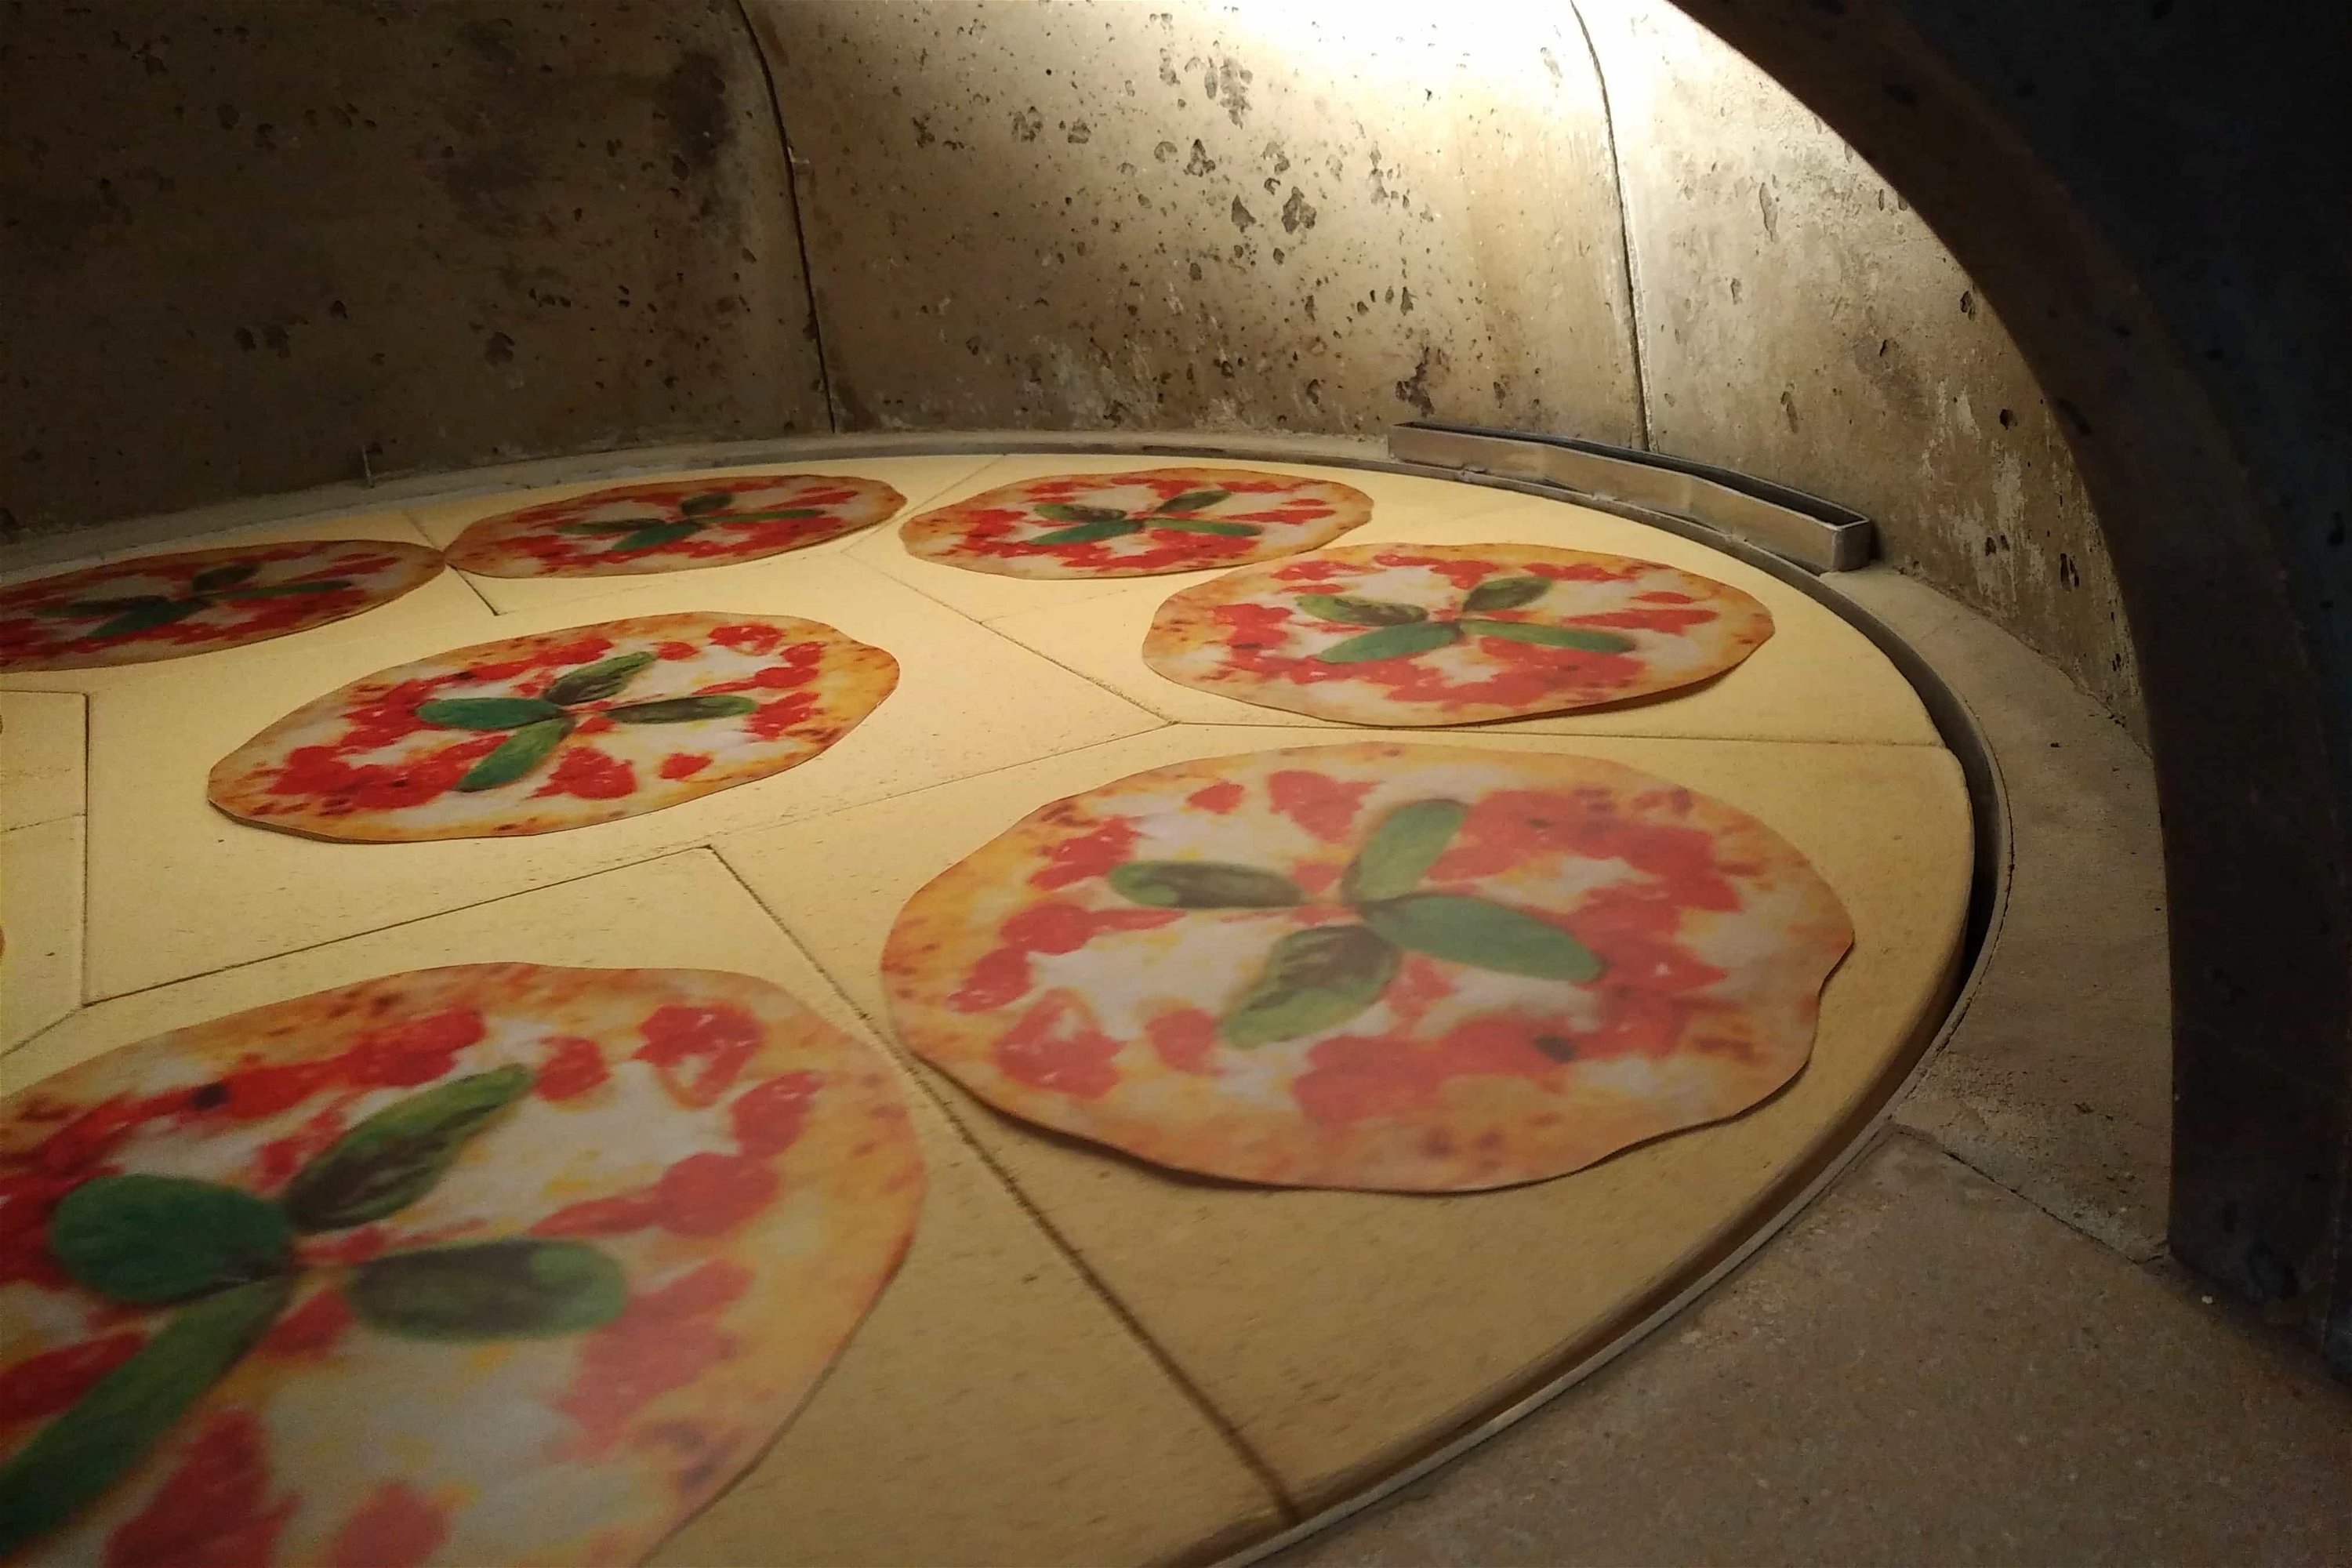 Holzbackofen Valoriani Rotativo: rotierender Pizzaofen, quadratisch, 90cm Druchmesser, für Gastro